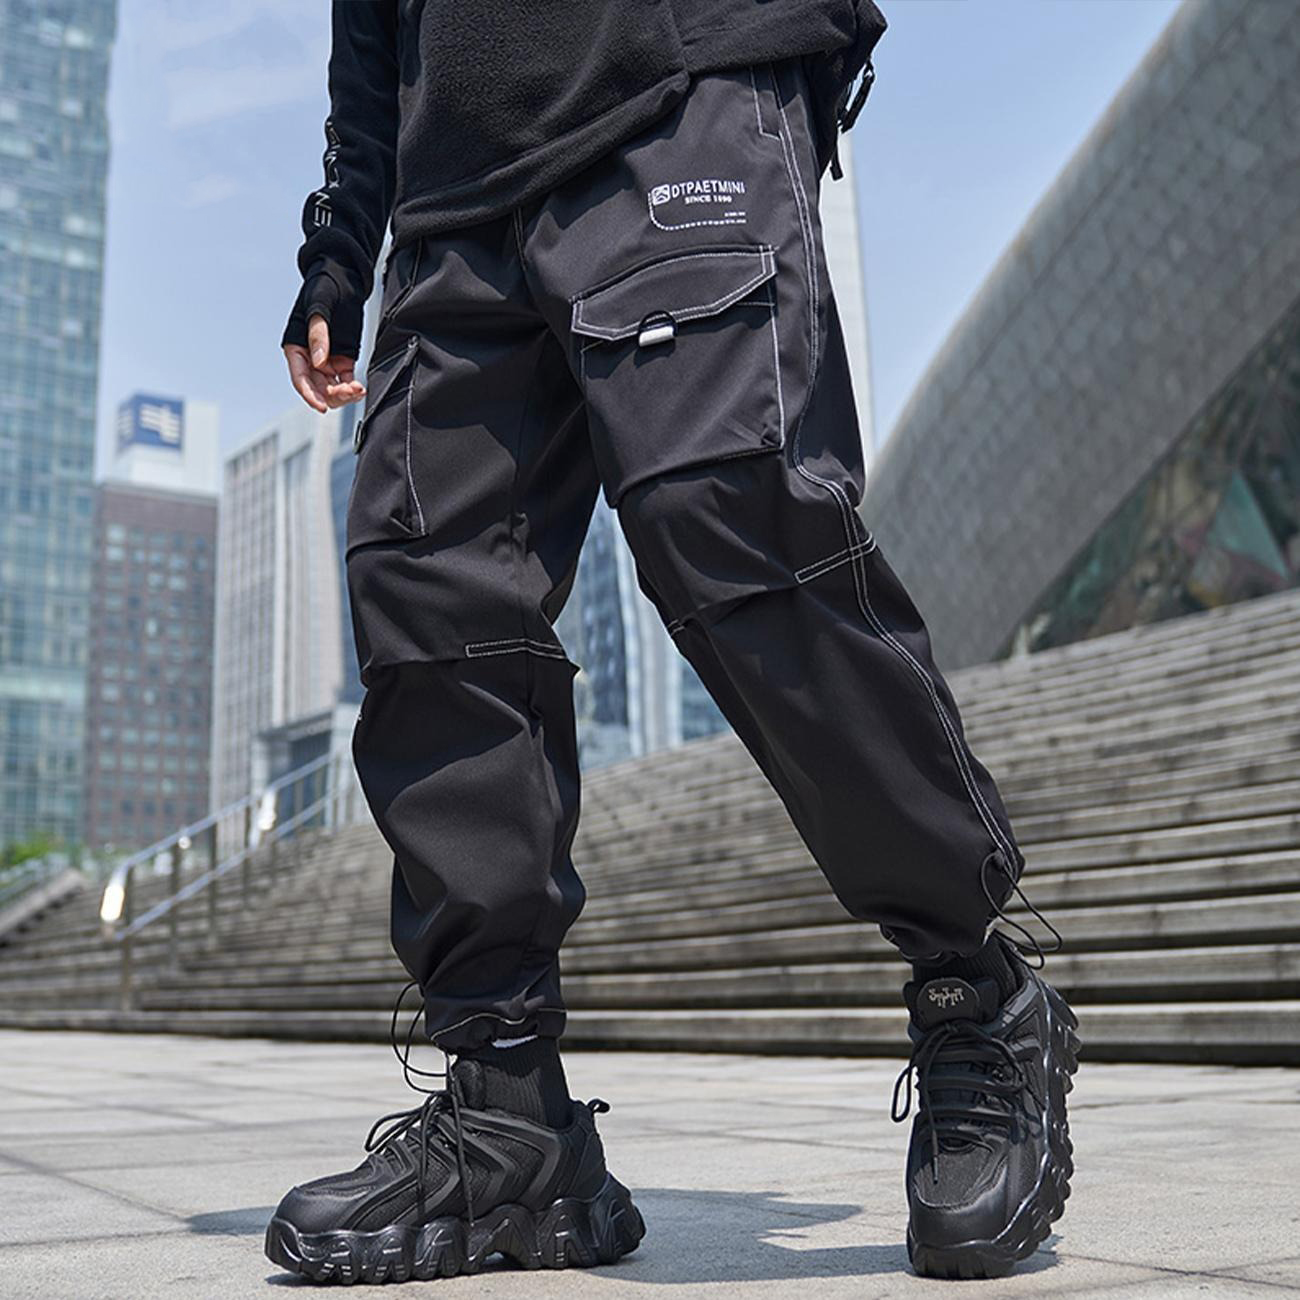 Pantalon cargo techwear homme - X-Techwear